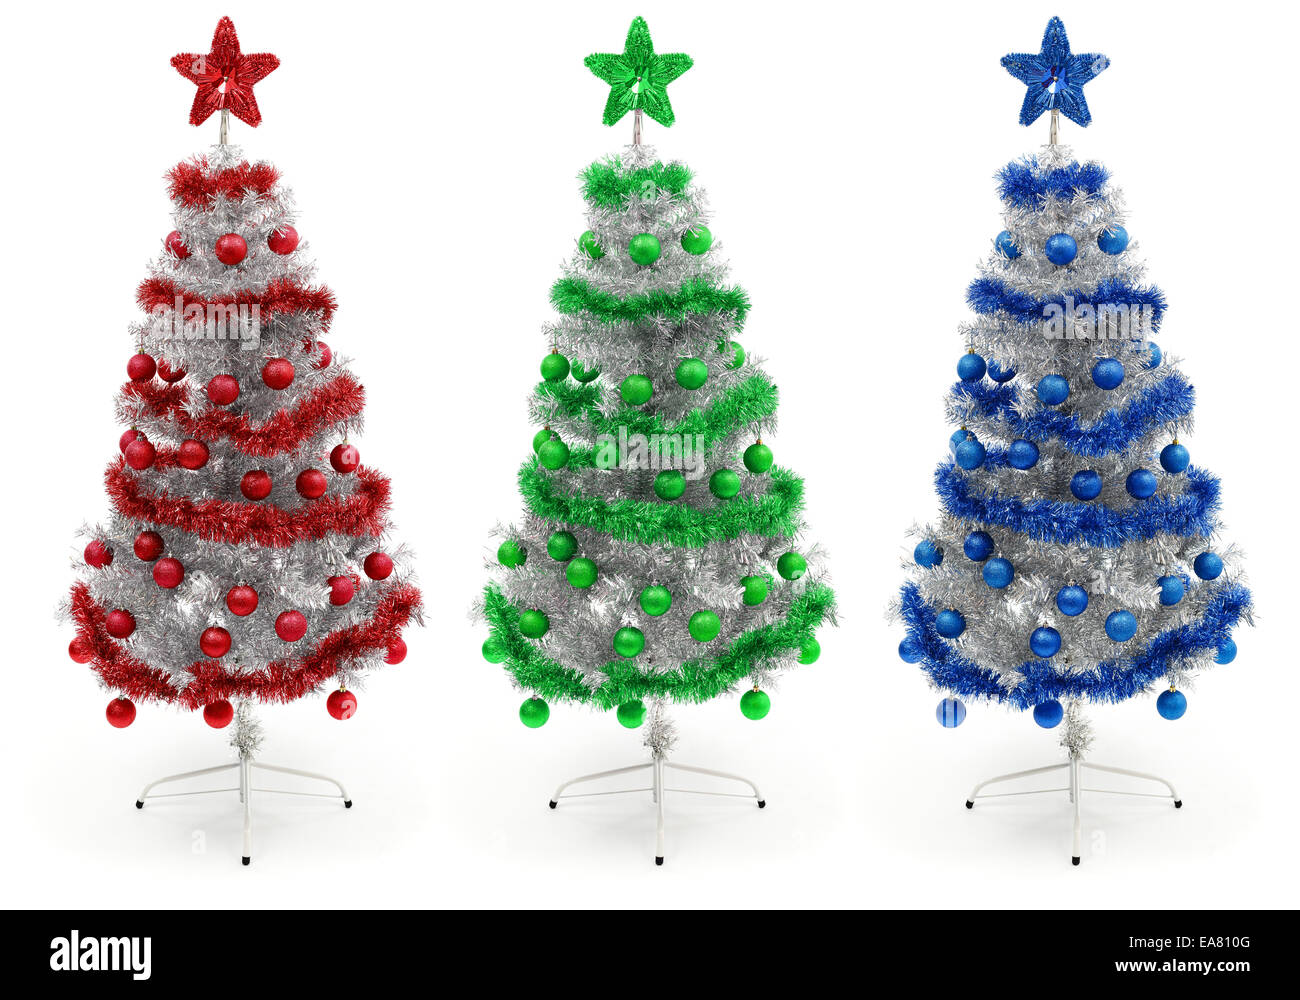 Albero Di Natale Rosso E Blu.Il Rosso Il Verde E Il Blu Argento Decorate Albero Di Natale Foto Stock Alamy